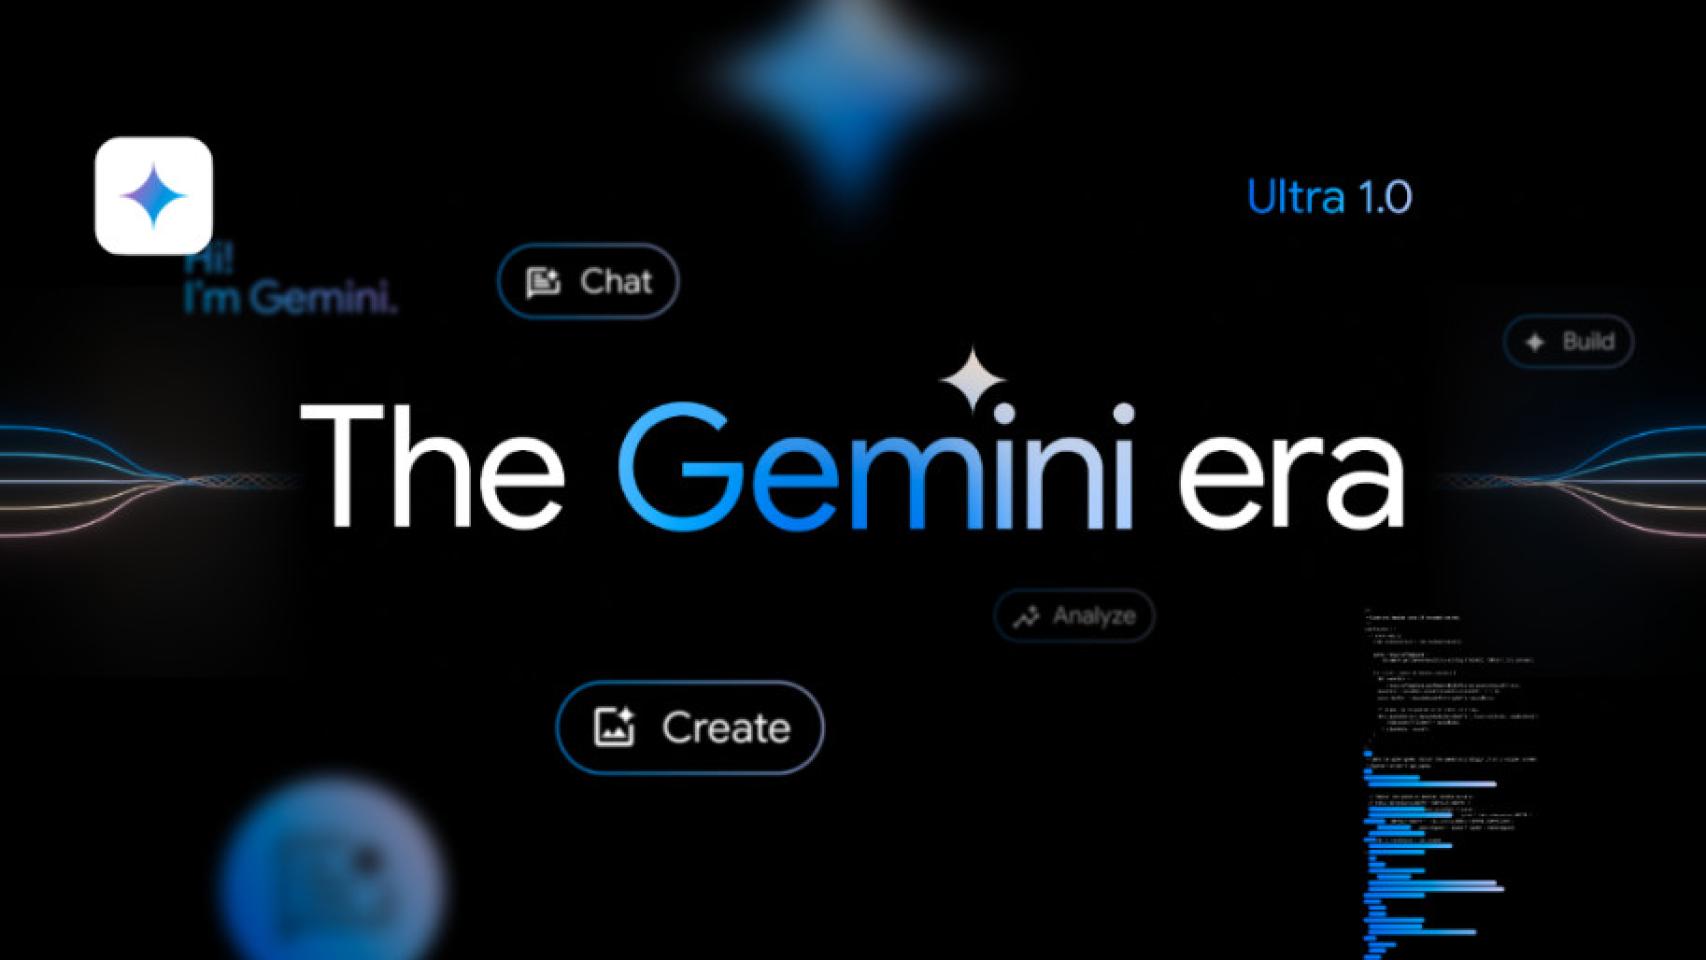 Google abraza la marca Gemini para su propuesta de inteligencia artificial, tanto para usuario final como para el segmento profesional.